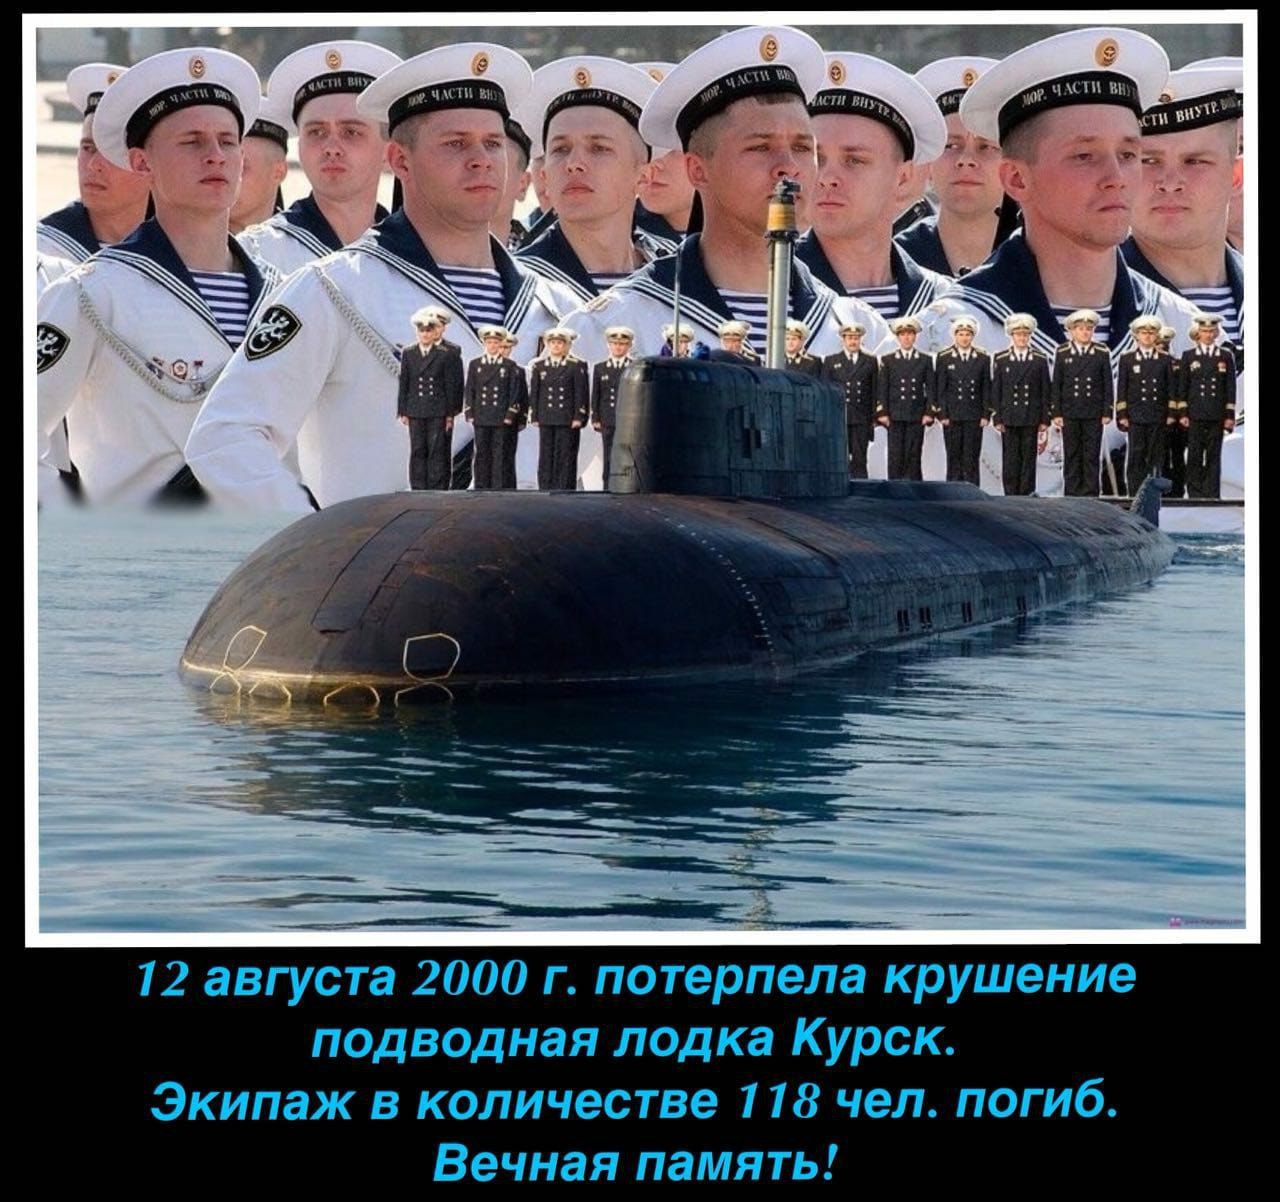 Военный моряк подводник. Подводная лодка к-141 «Курск». АПЛ Курск экипаж 2000. АПРК К 141 Курск экипаж. Память экипажа подводной лодки Курск.